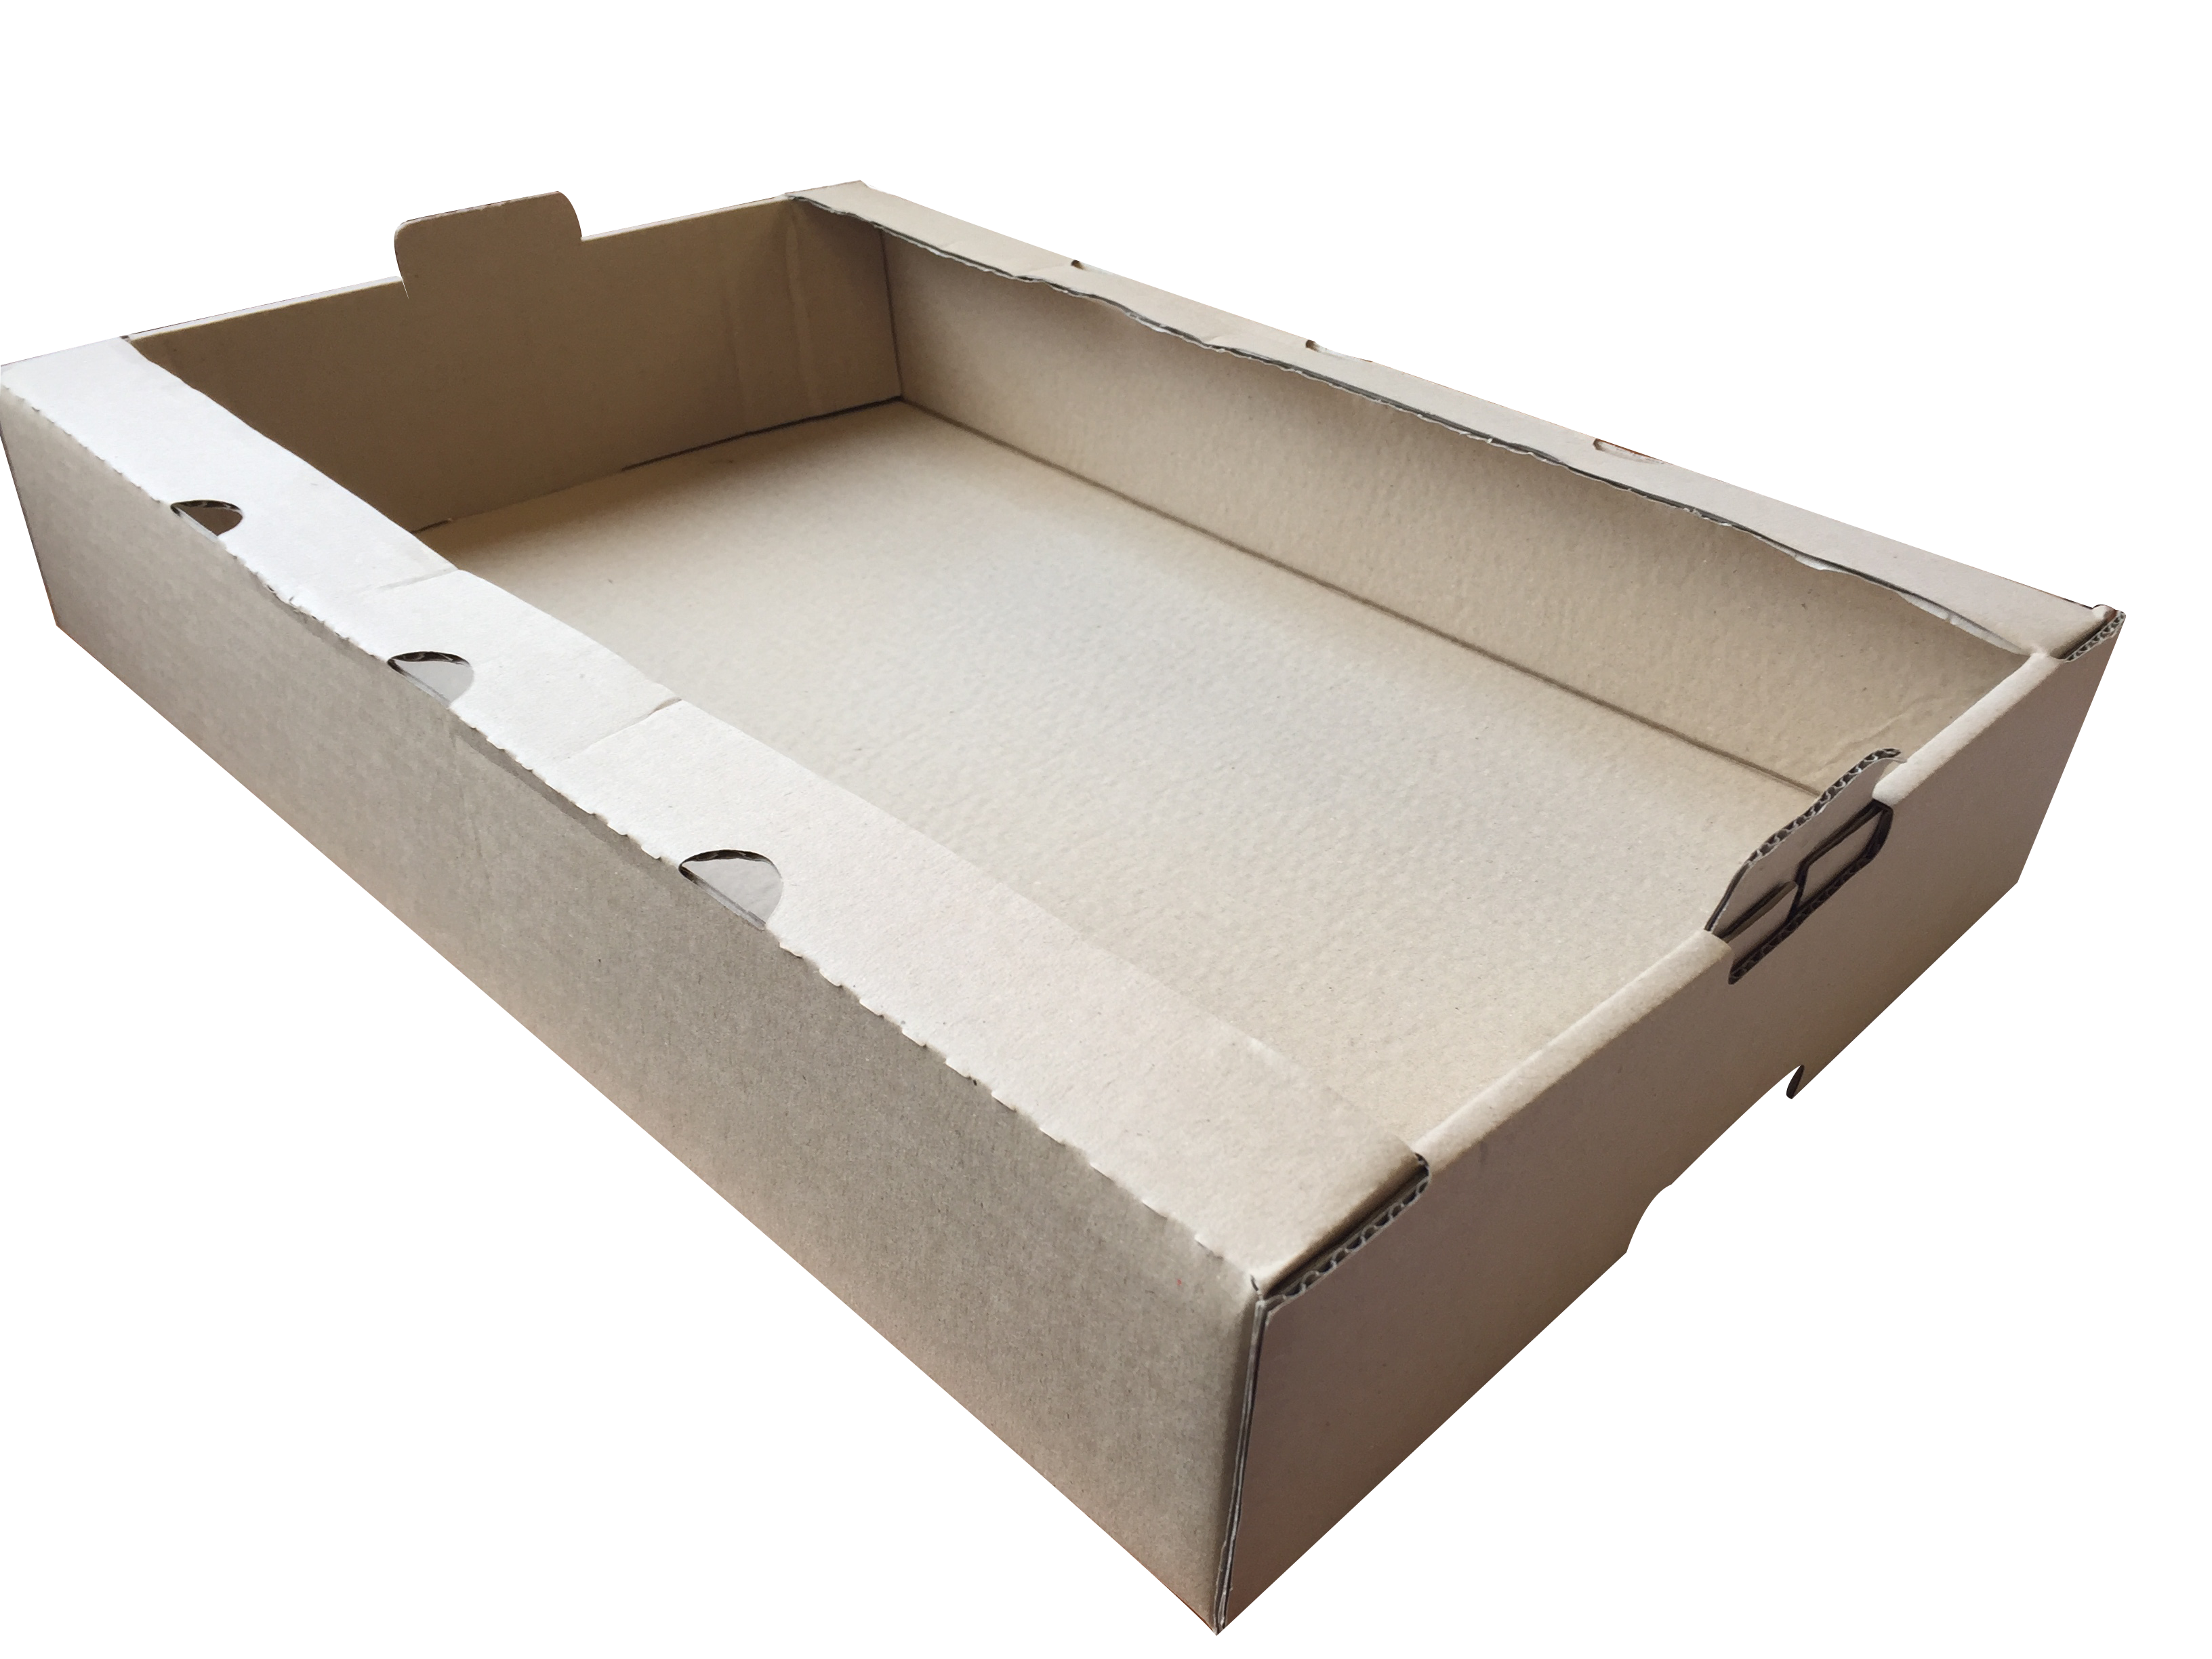 Plateau manuel carton l Caisse et stockage l GH Diffusion Emballage